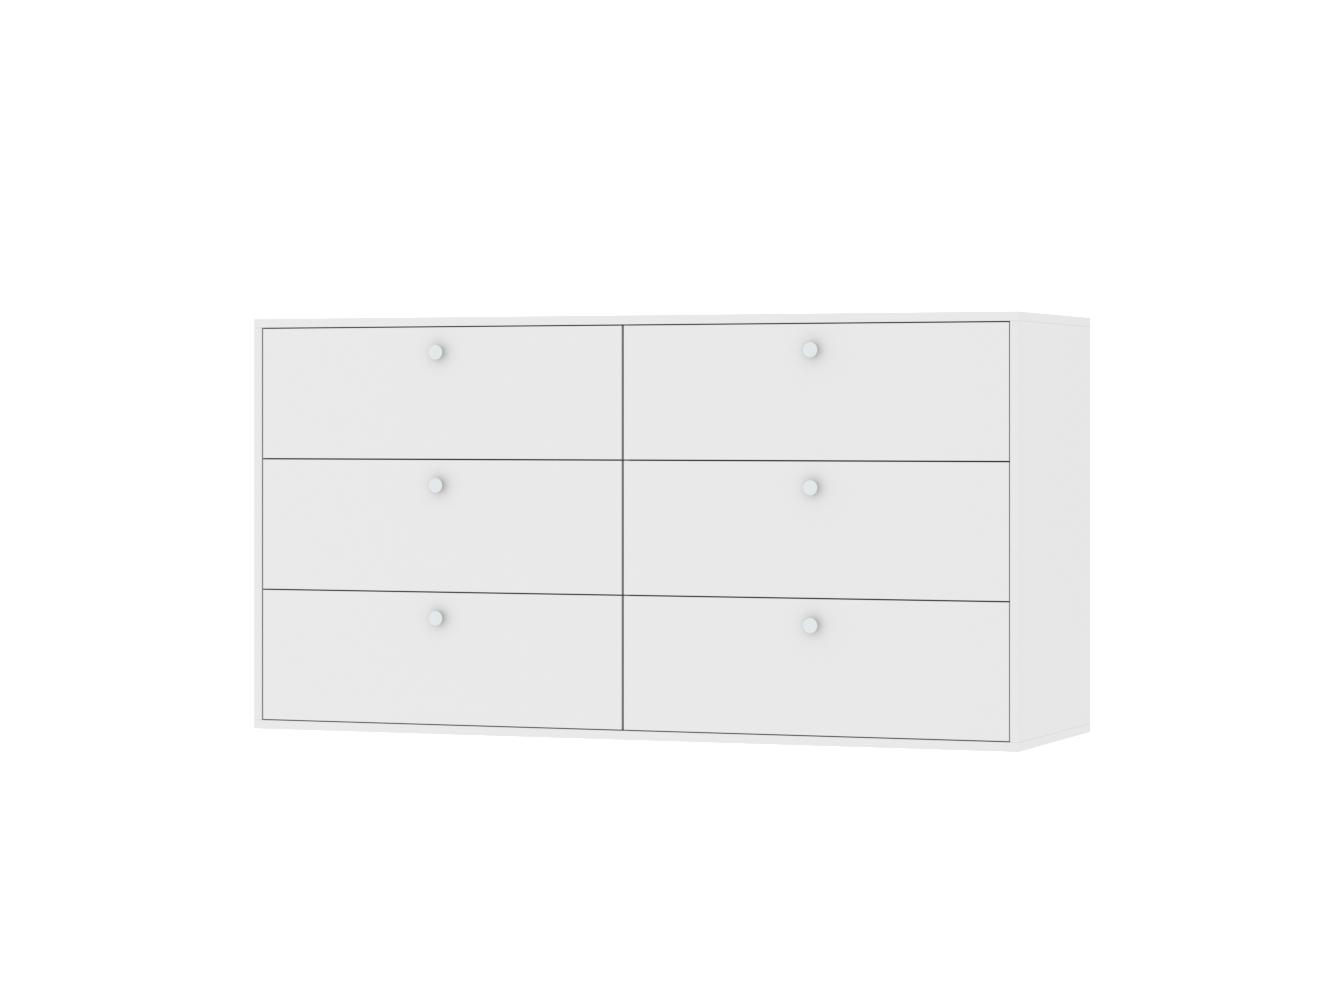 Комод Каллакс 16 white ИКЕА (IKEA) изображение товара